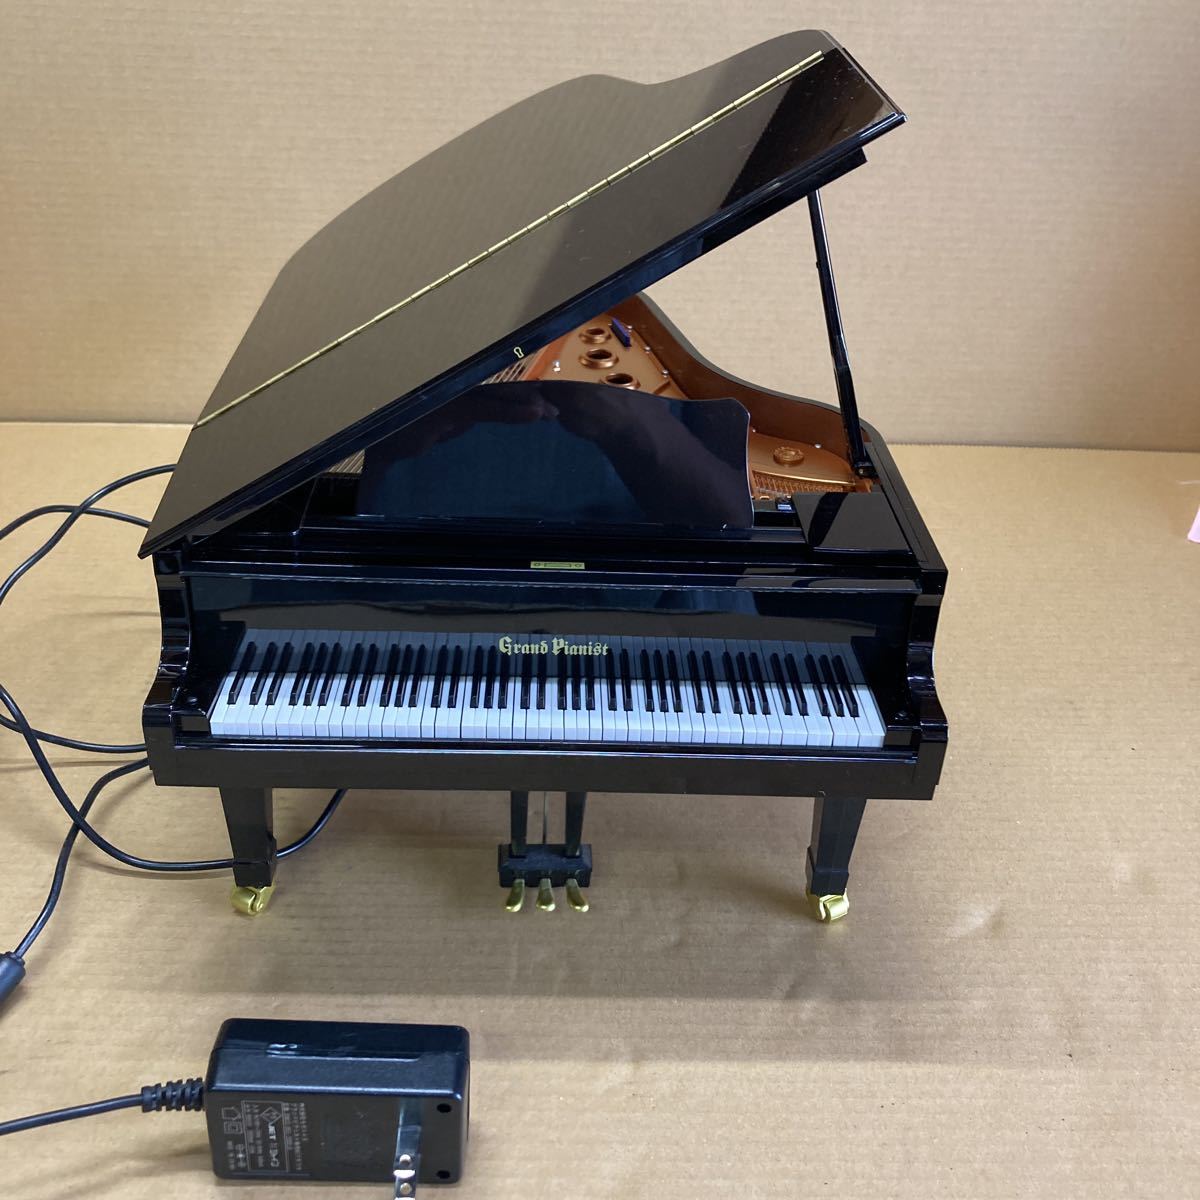 【正常作動確認済み】 SEGA TOYS 自動演奏ピアノ Grand 自動演奏 セガトイズ グランドピアニスト